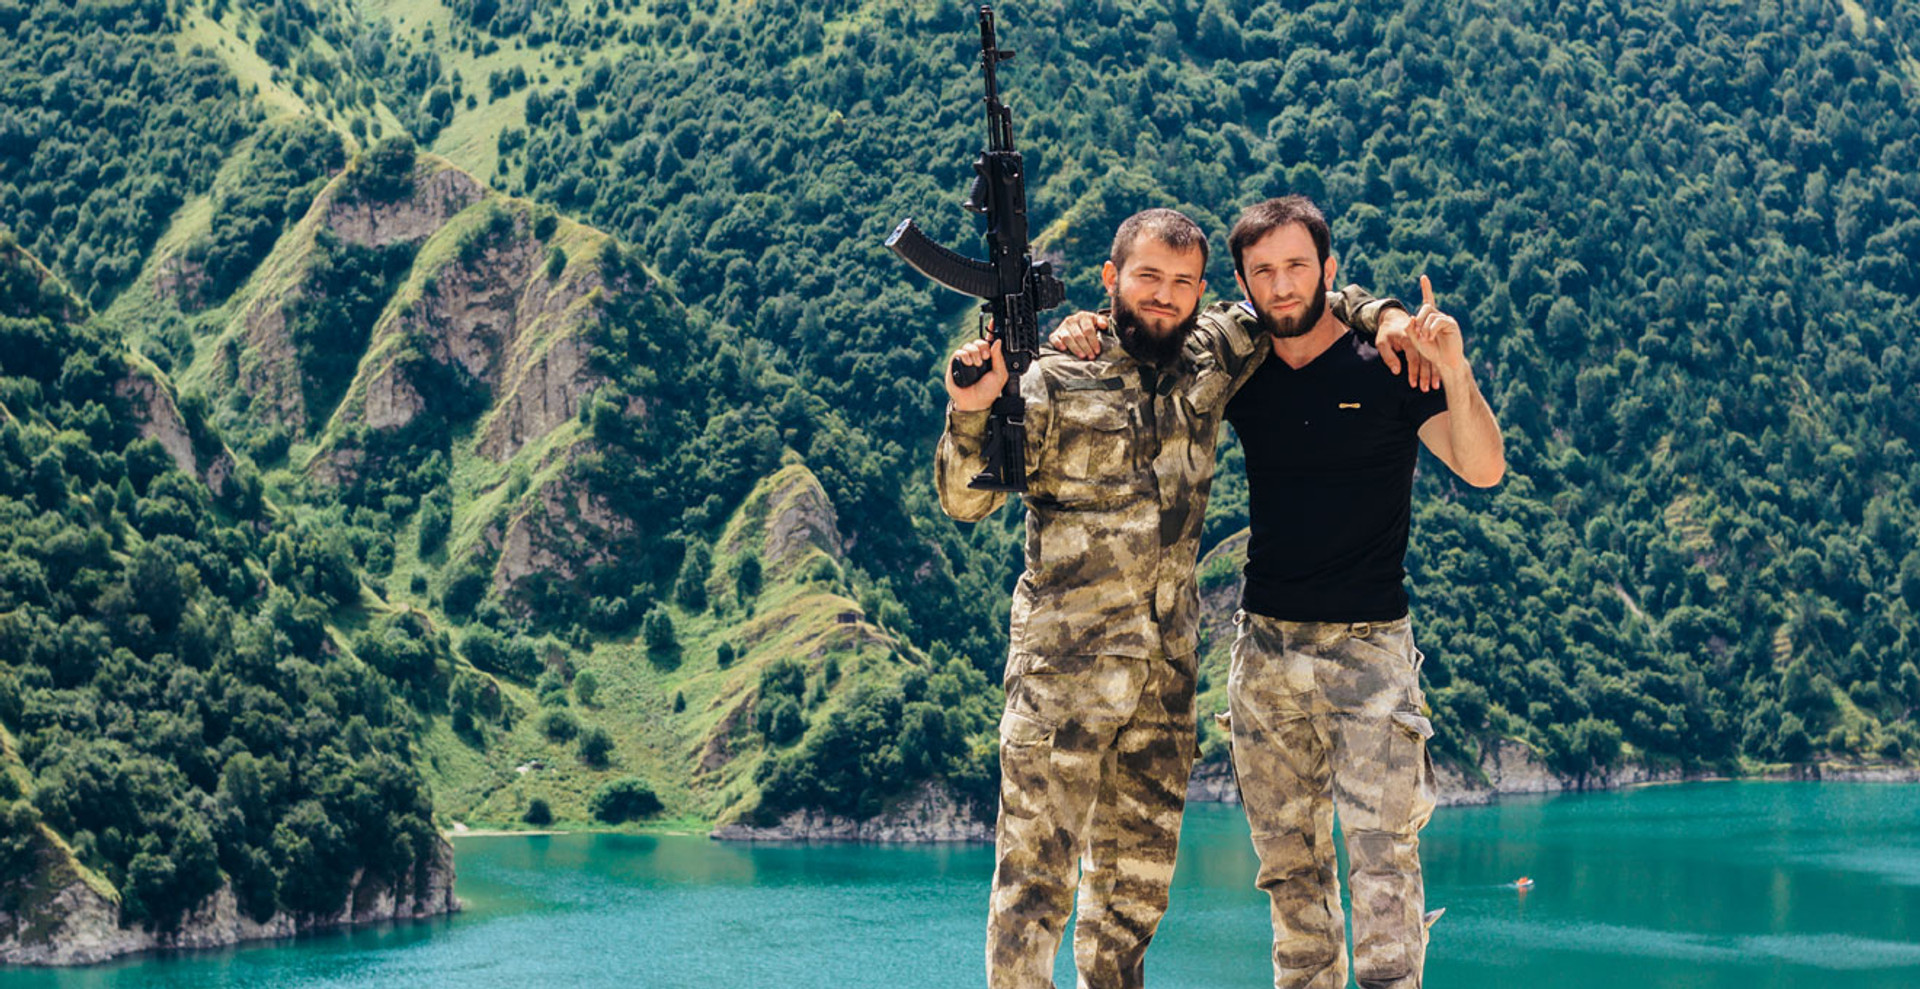 Як я поїхала до Чечні і знайшла щось більше, ніж історії про війну